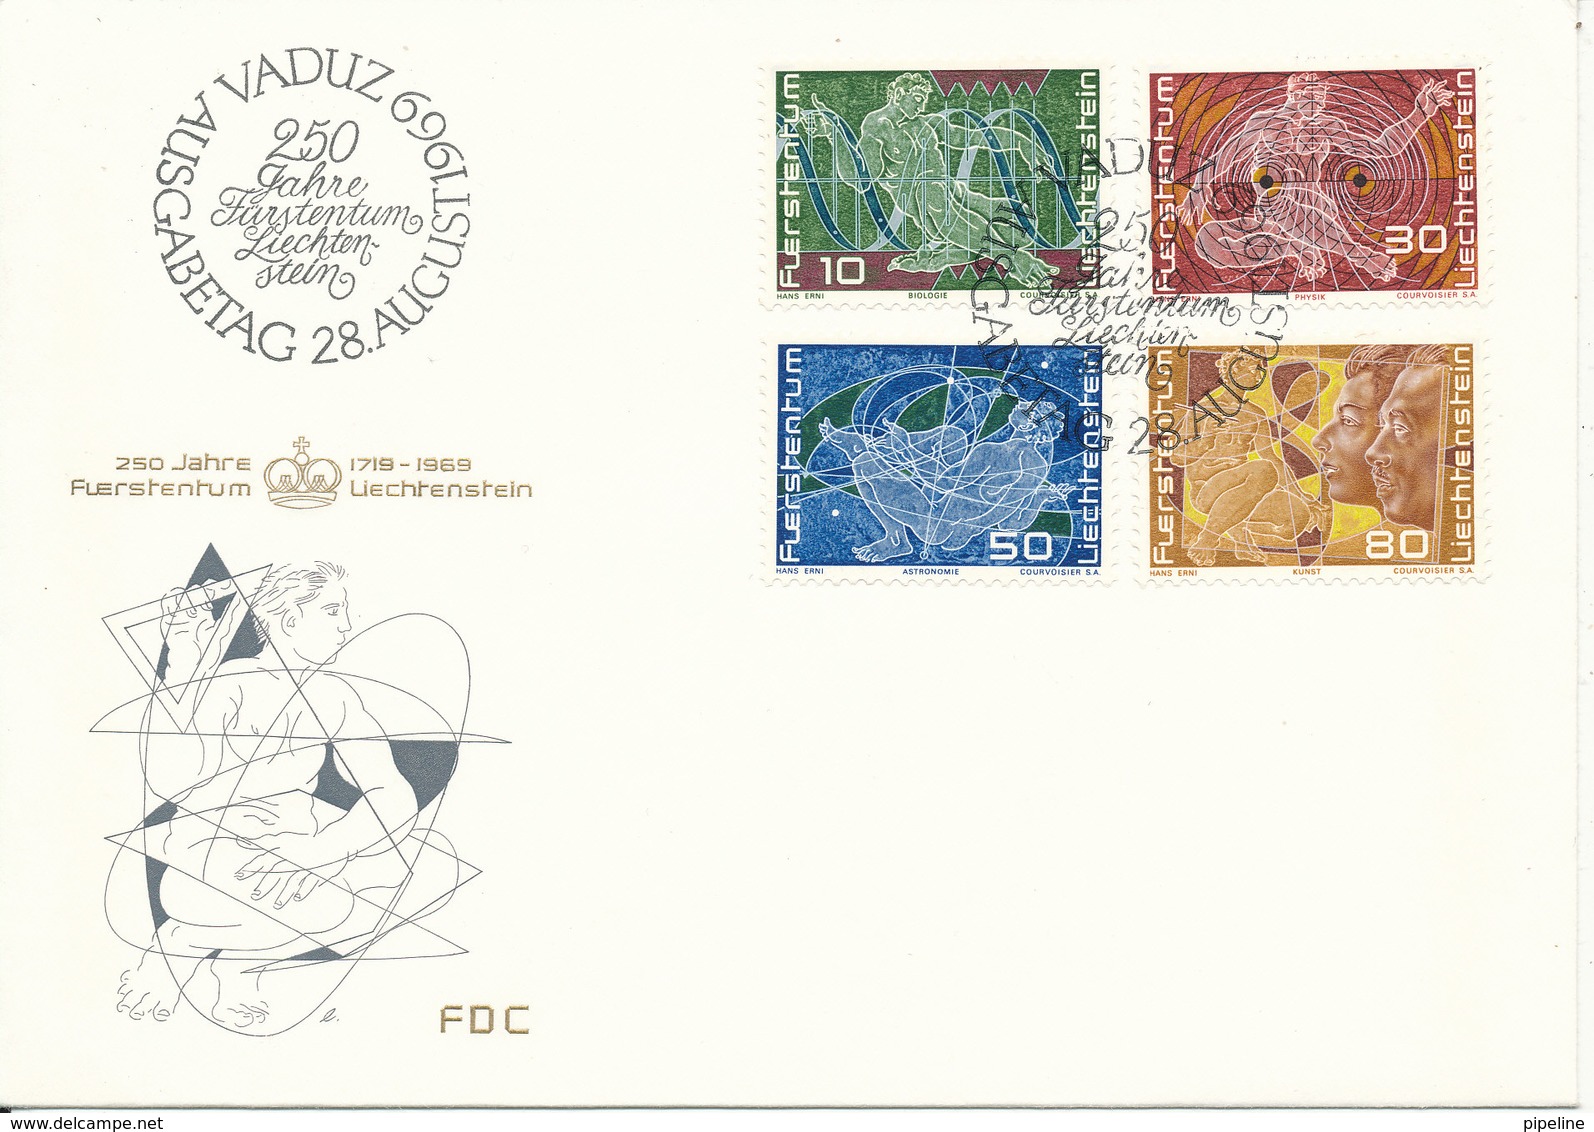 Liechtenstein FDC 28-8-1969 250th Anniversary Of Liechtenstein Complete Set Of 4 With Cachet - FDC